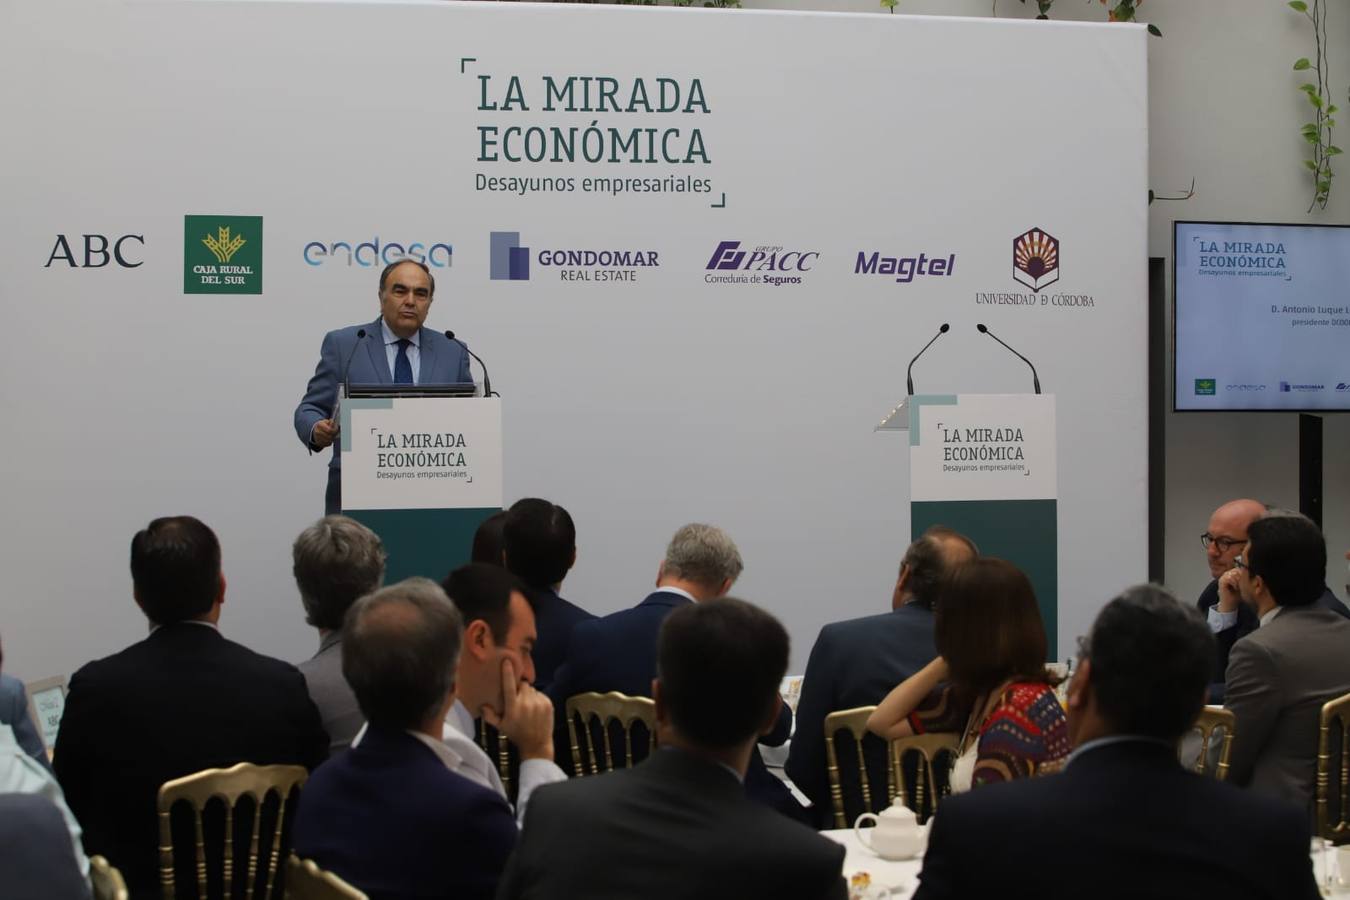 La Mirada Económica de ABC Córdoba, en imágenes